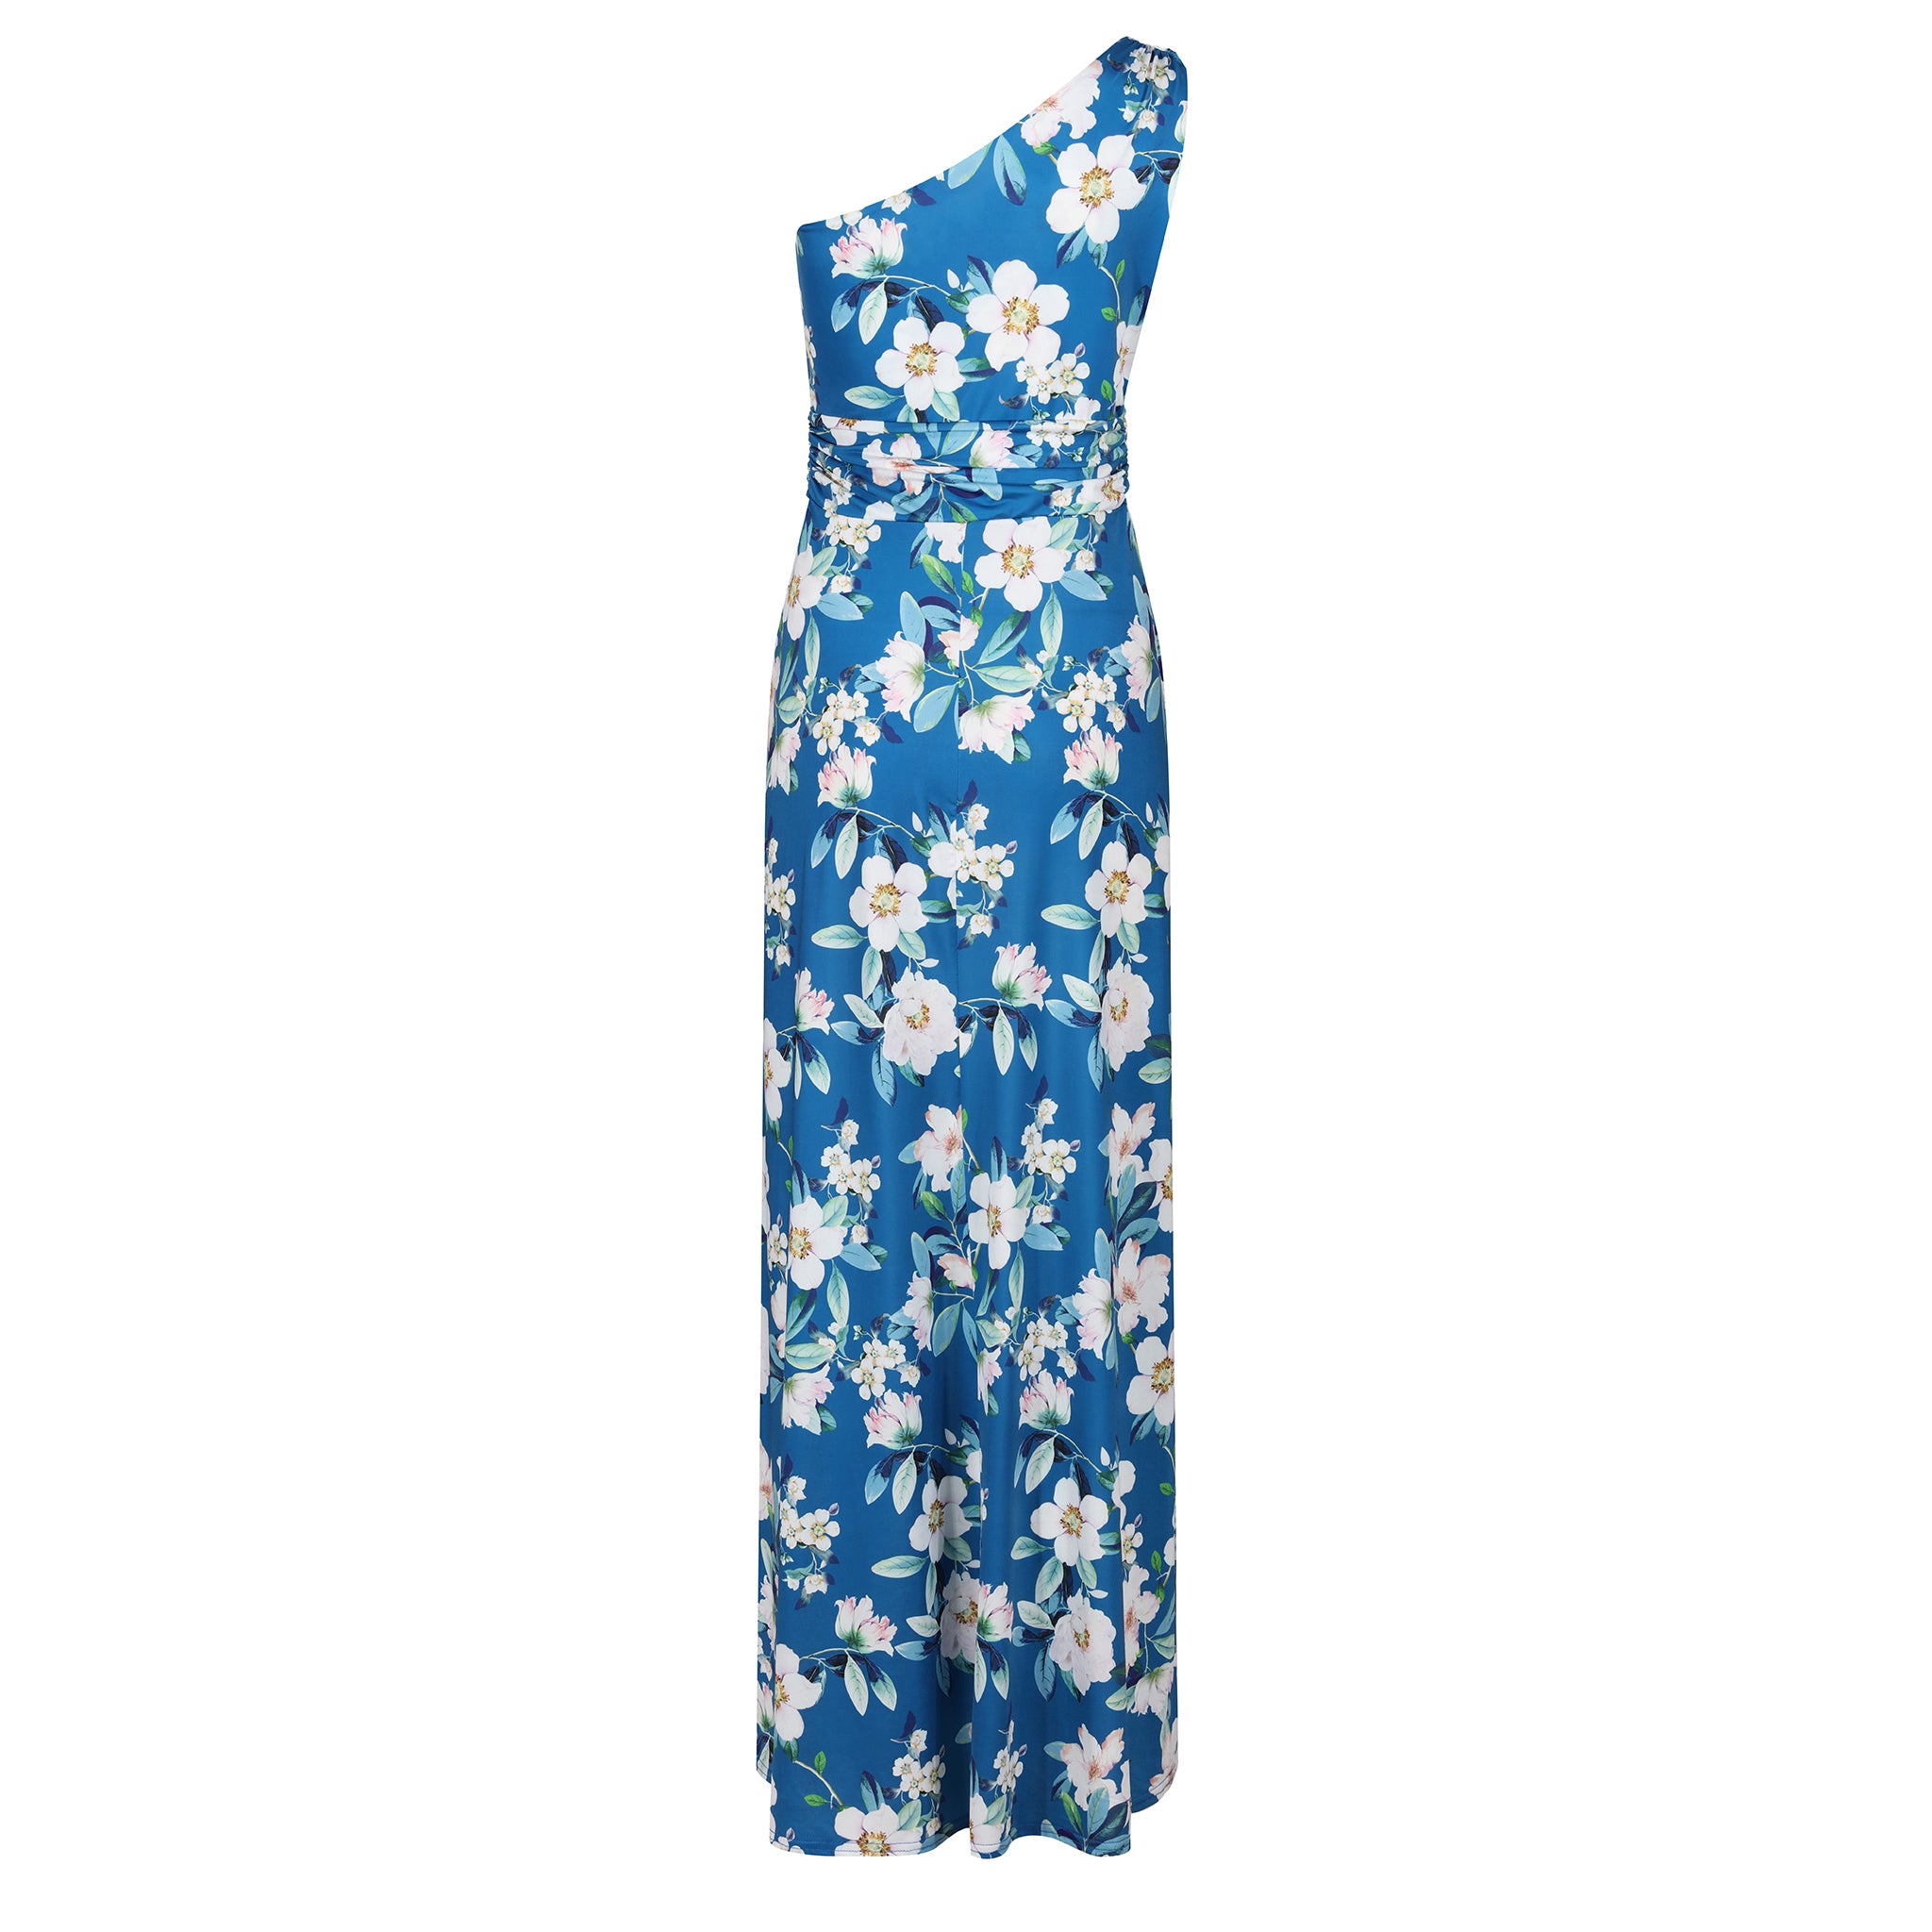 Off Shoulder Teal Blue Floral Maxi Dress